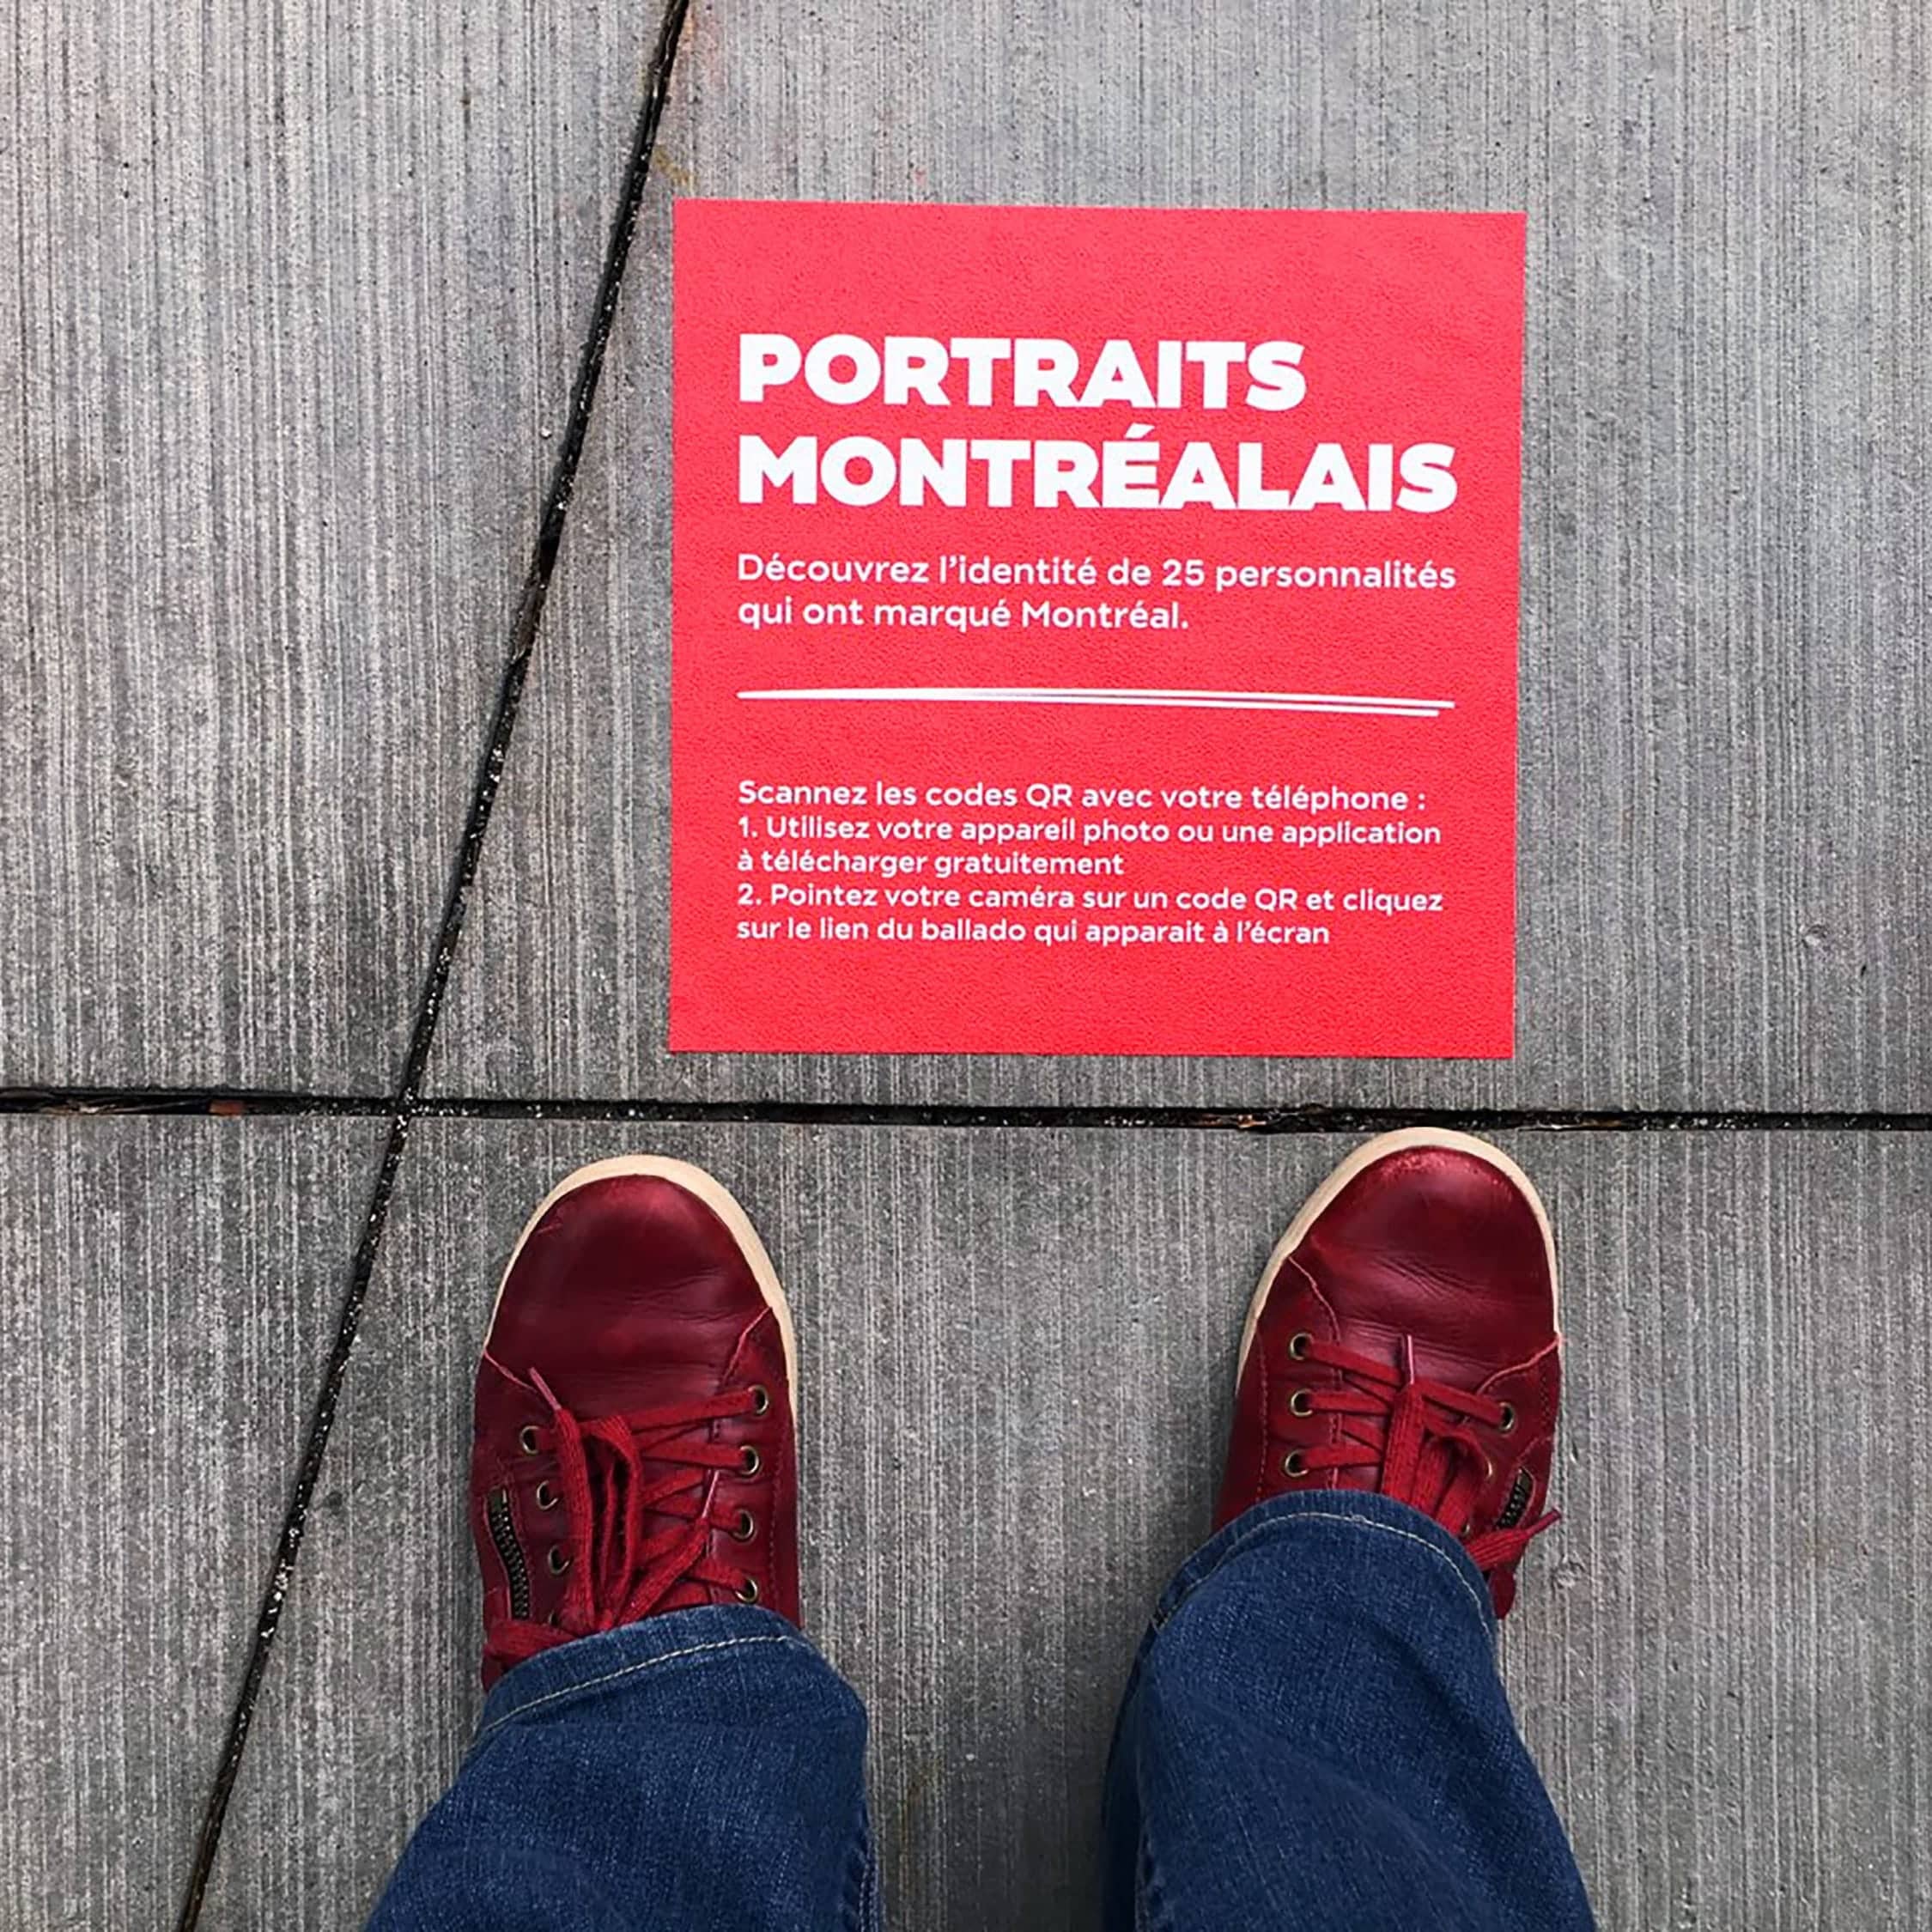 L’exposition Portraits montréalais